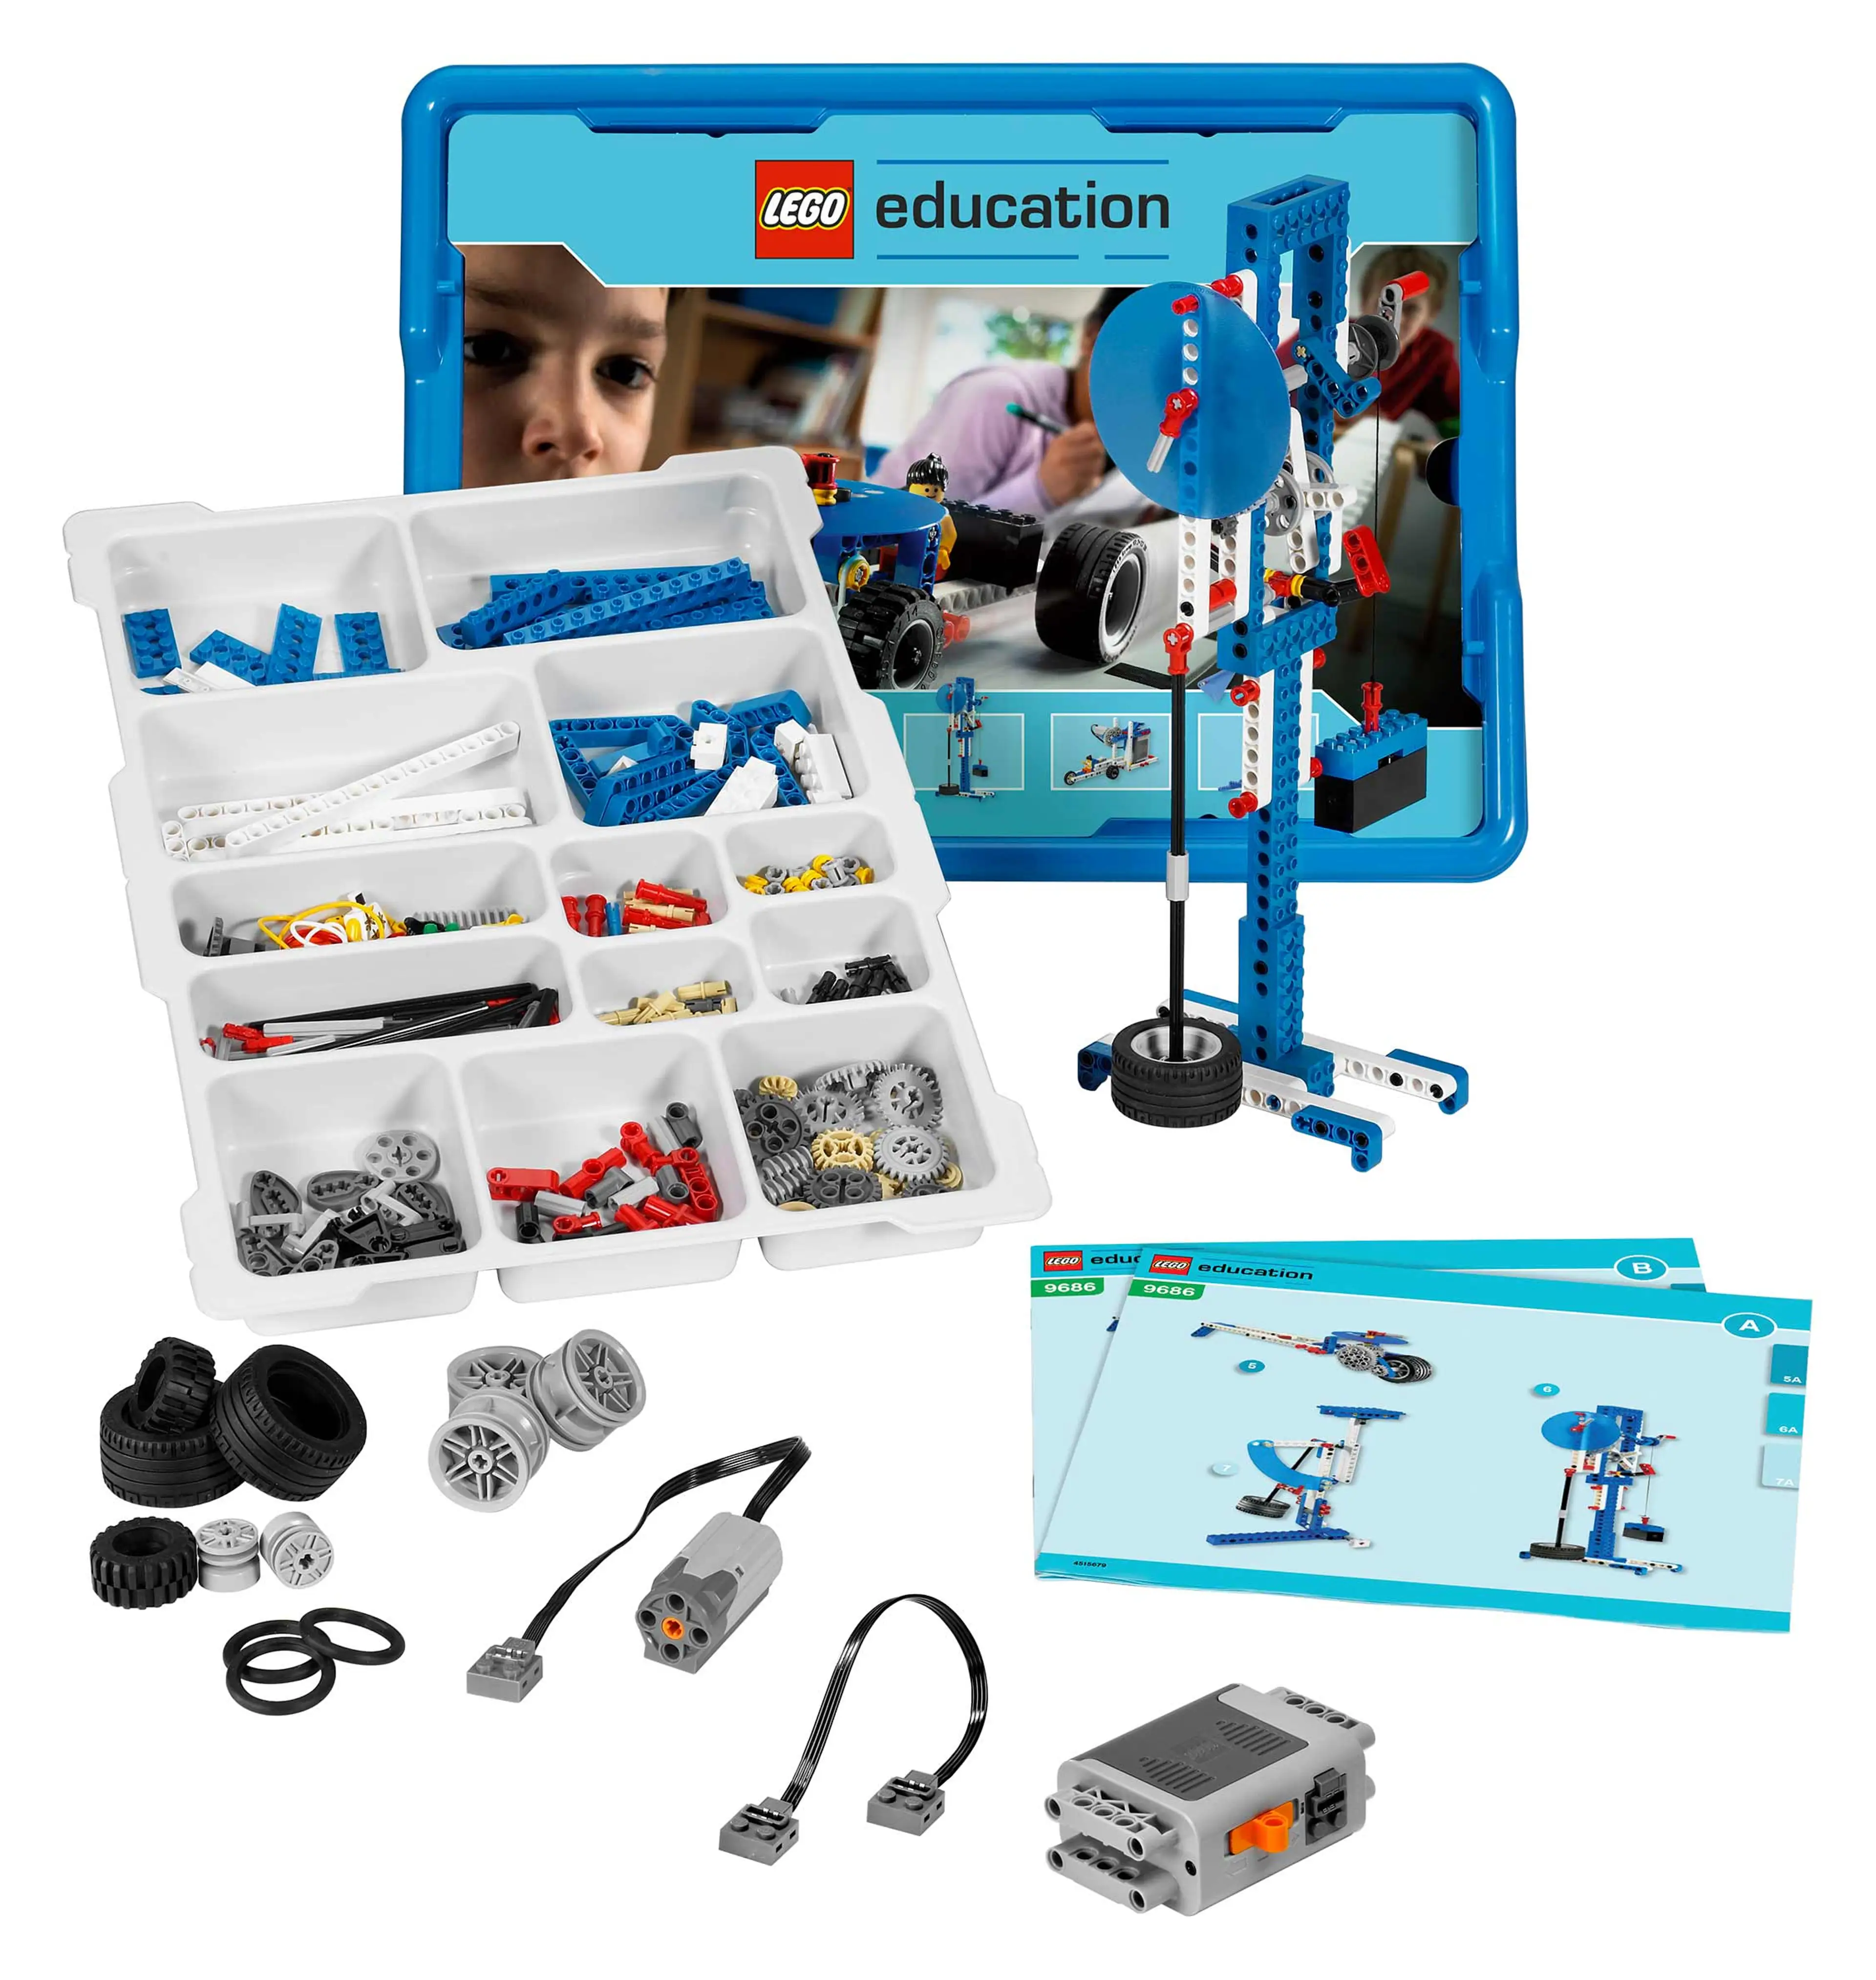 LEGO Education kit